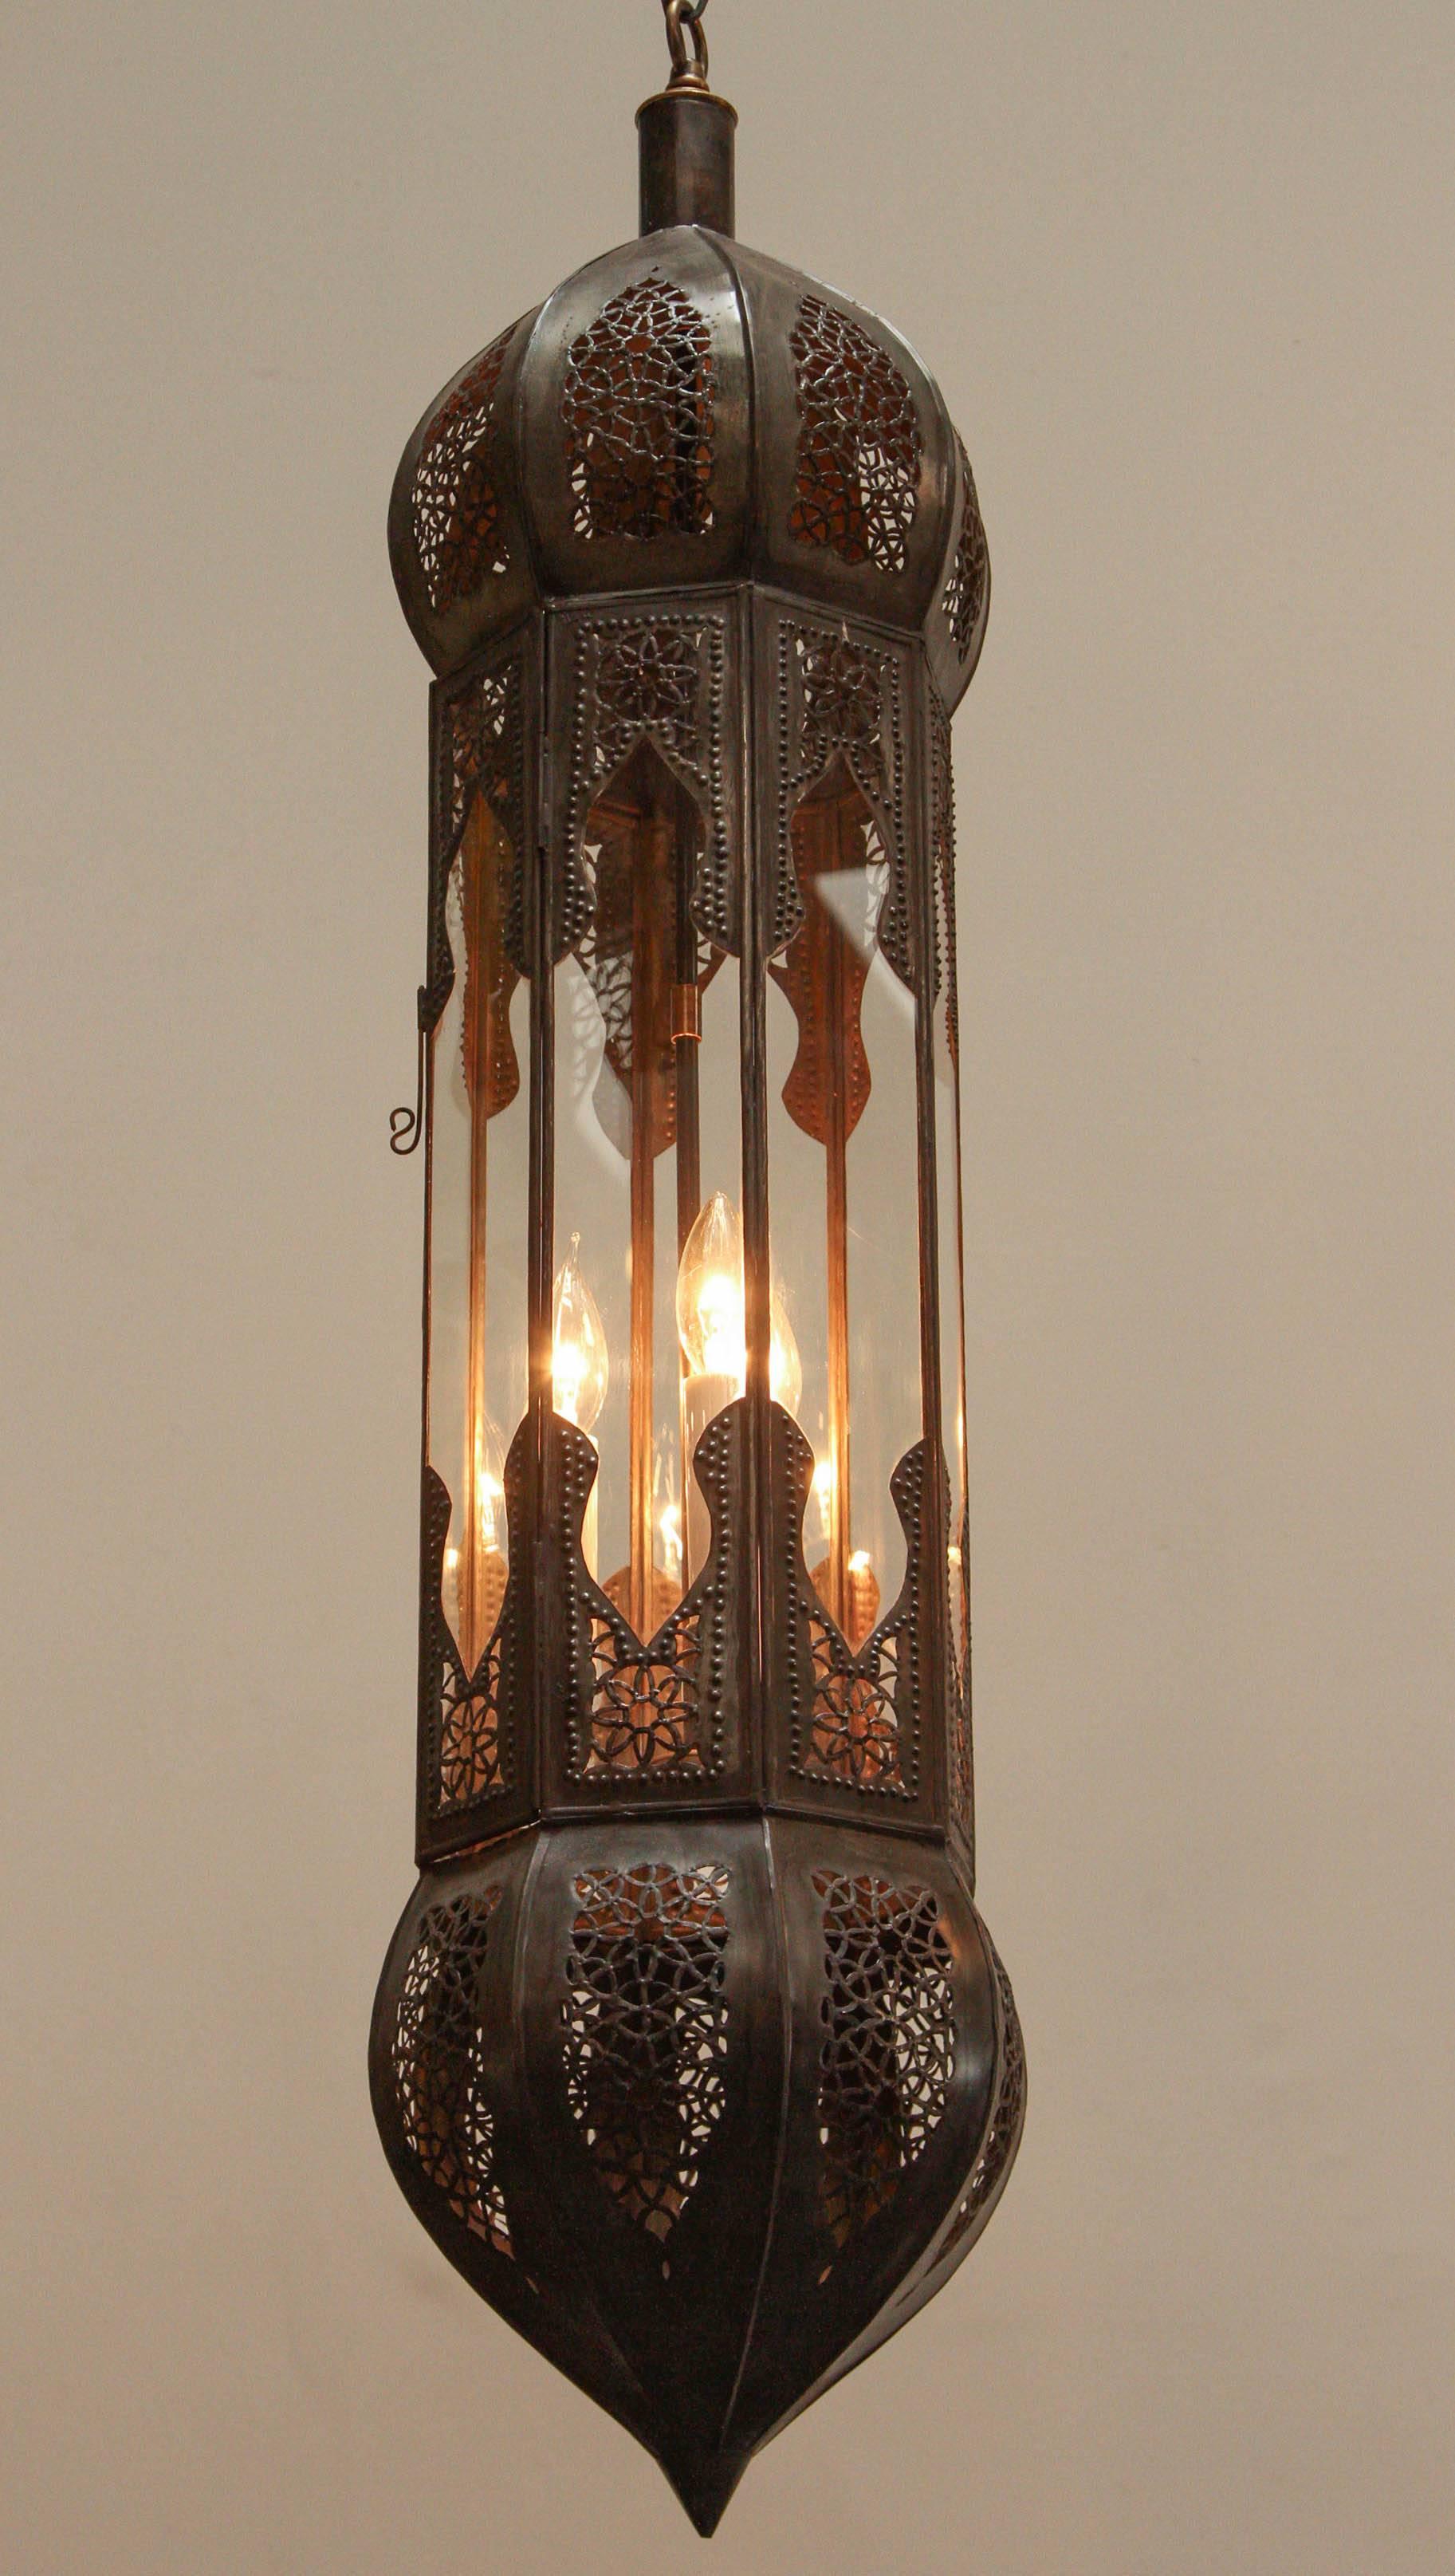 Grand et long pendentif marocain en métal mauresque et verre transparent, fabriqué à la main à Marrakech, au Maroc, par des artisans talentueux, métal taillé à la main en filigrane de motifs mauresques.
La couleur du métal est le bronze